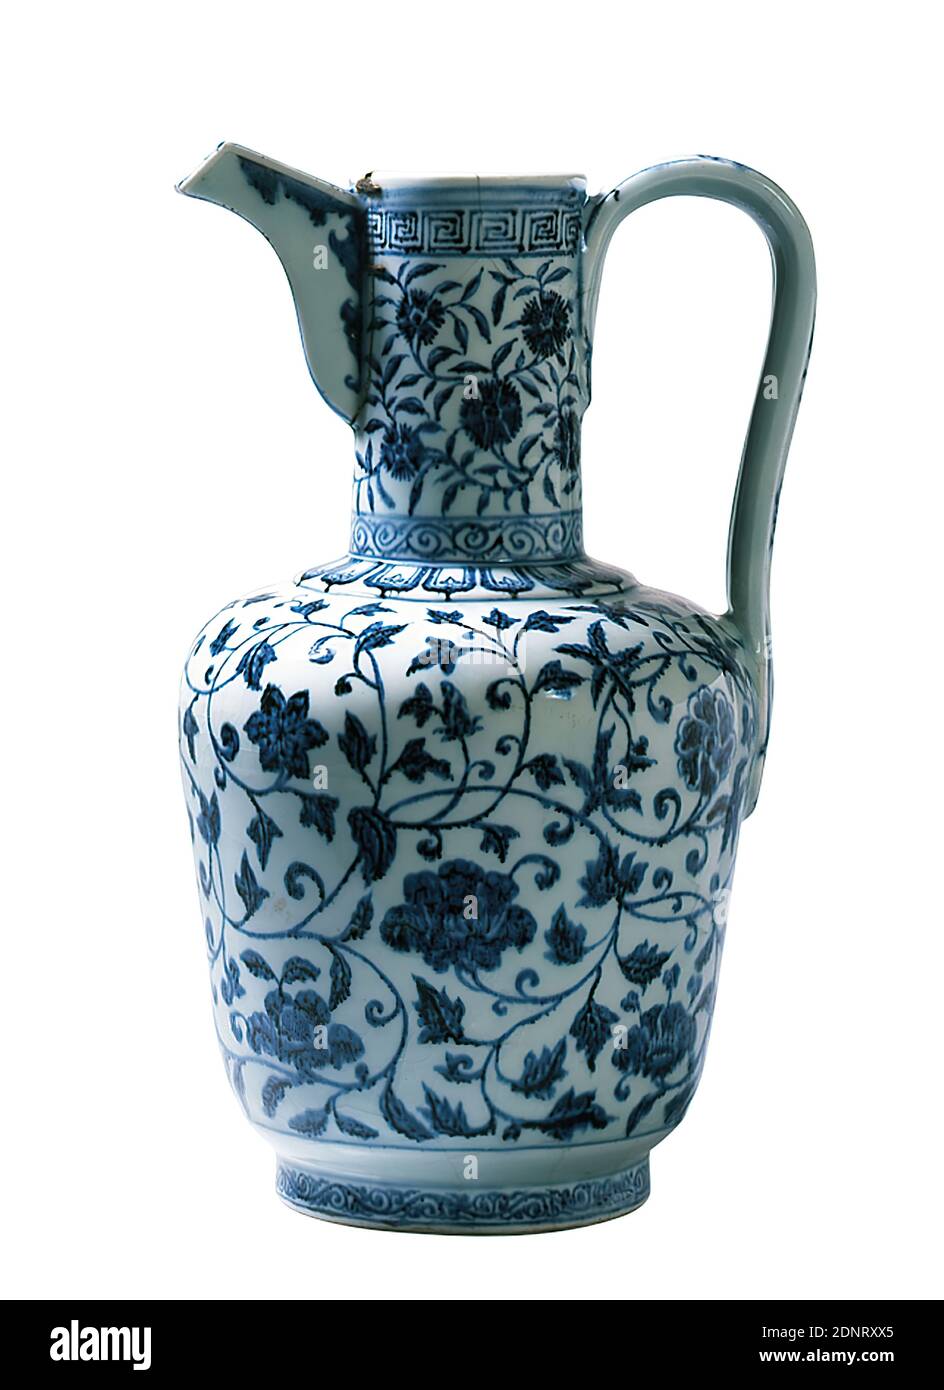 Großer Porzellantopf, Porzellan, unterglasierte Dekoration, Gesamt: Höhe: 33.30 cm, Keramik, Blumenschmuck, Mäander, yongle, das Gemälde in Kobaltblau unter der Glasur etabliert den Ruhm des chinesischen Porzellans der Ming-Dynastie (1368-1644). Die Eigenschaften des Kobaltminerals wurden in Persien entdeckt. Die Chinesen erlangten jedoch weltweite Bewunderung mit ihrer Anwendung auf Porzellan. Das blau-weiße Porzellan wurde zum wichtigsten Exportartikel nach Europa, dem Nahen und Mittleren Osten. Der Krug ist einem islamischen Metallgefäß nachempfunden und war für den lokalen Markt bestimmt. Stockfoto